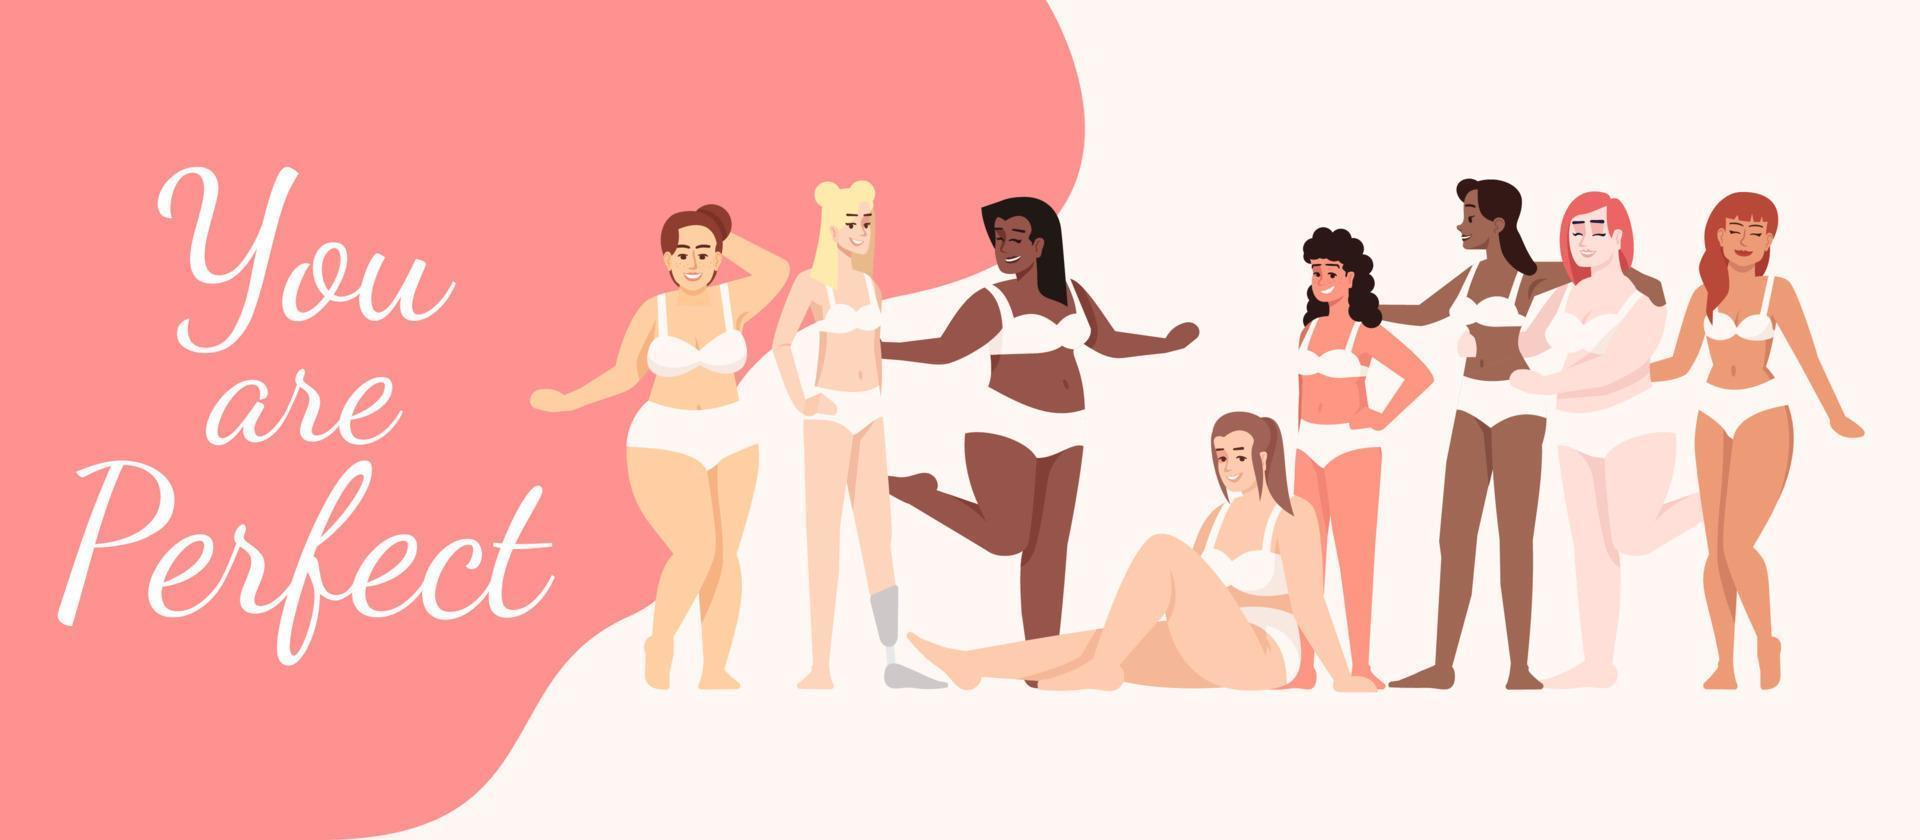 je bent een perfecte platte poster vector sjabloon. vrouwen gekleed in lingerie geïsoleerde stripfiguren op wit en roze. lichaam positief. banner, brochurepagina, folderontwerplay-out met plaats voor tekst